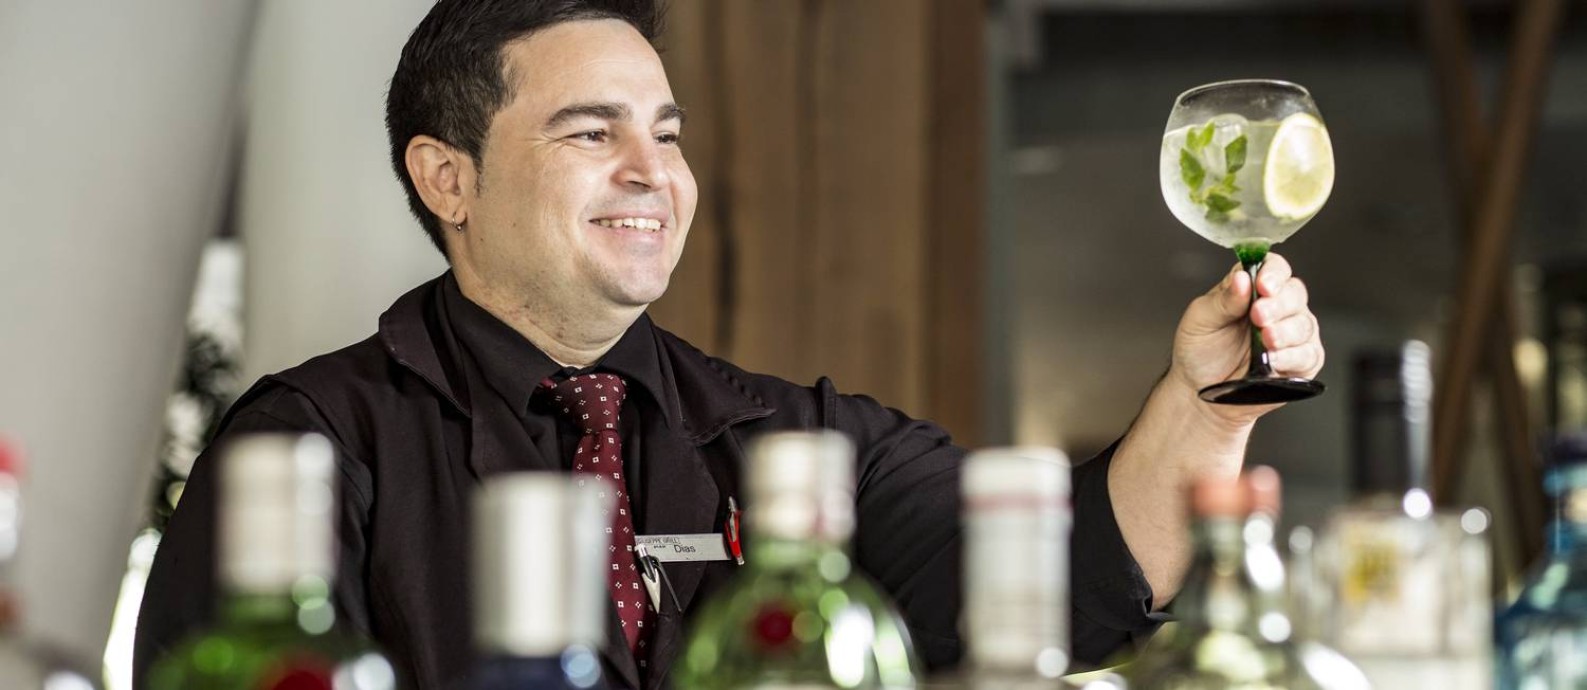 O “barman” José Días cuida da carta de bebidas da gintoneria Donostia, no Lagoon Gourmet: drinques agradam a jovens na faixa dos 30 anos, homens e mulheres Foto: Ana Branco / O Globo